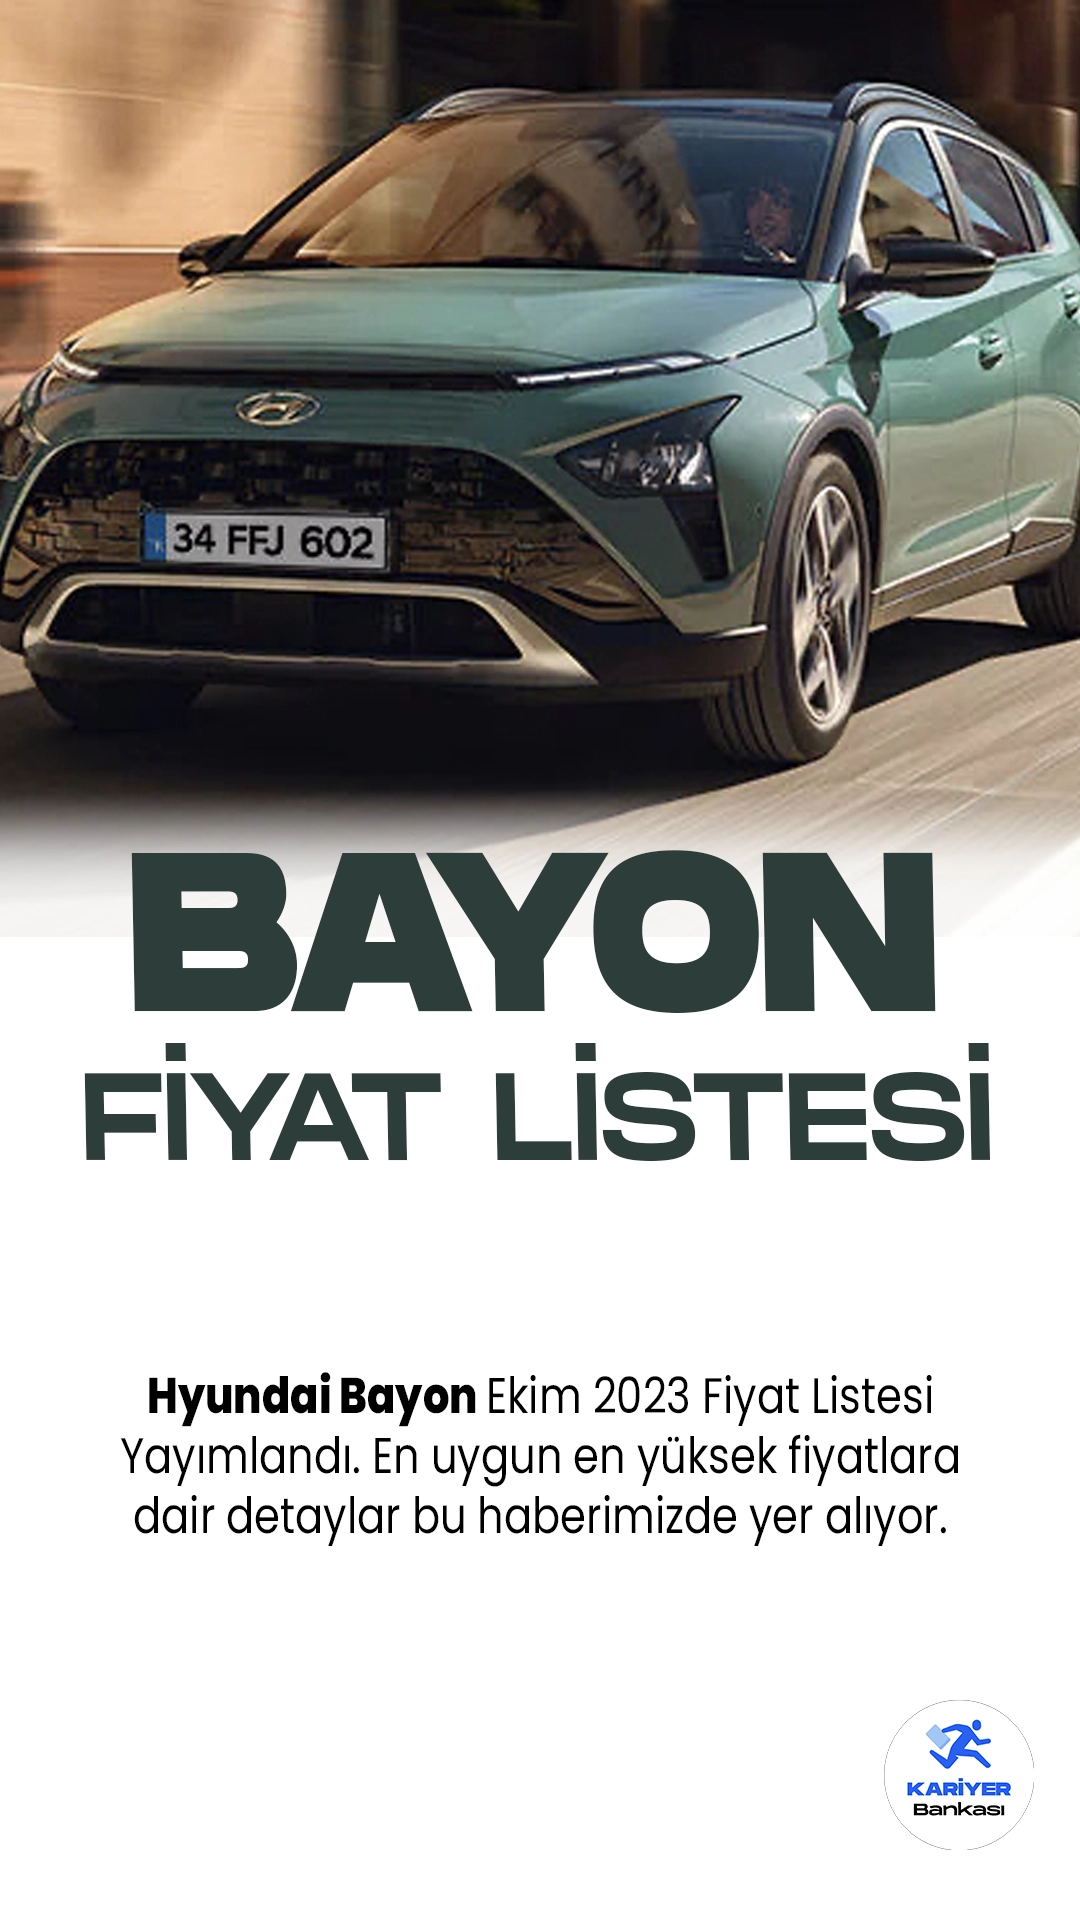 Hyundai Bayon Ekim 2023 Fiyat Listesi Yayımlandı. Hyundai, kompakt SUV segmentine yeni bir soluk getirmeye hazırlanıyor. Hyundai Bayon, şehir içi ve şehir dışı sürüşler için mükemmel bir seçenek sunuyor. Bayon'un dinamik tasarımı, şık çizgileri ve modern detaylarıyla dikkat çekiyor. Aracın iç mekanı ferah ve konforlu, geniş bagaj alanı ise pratikliği artırıyor.